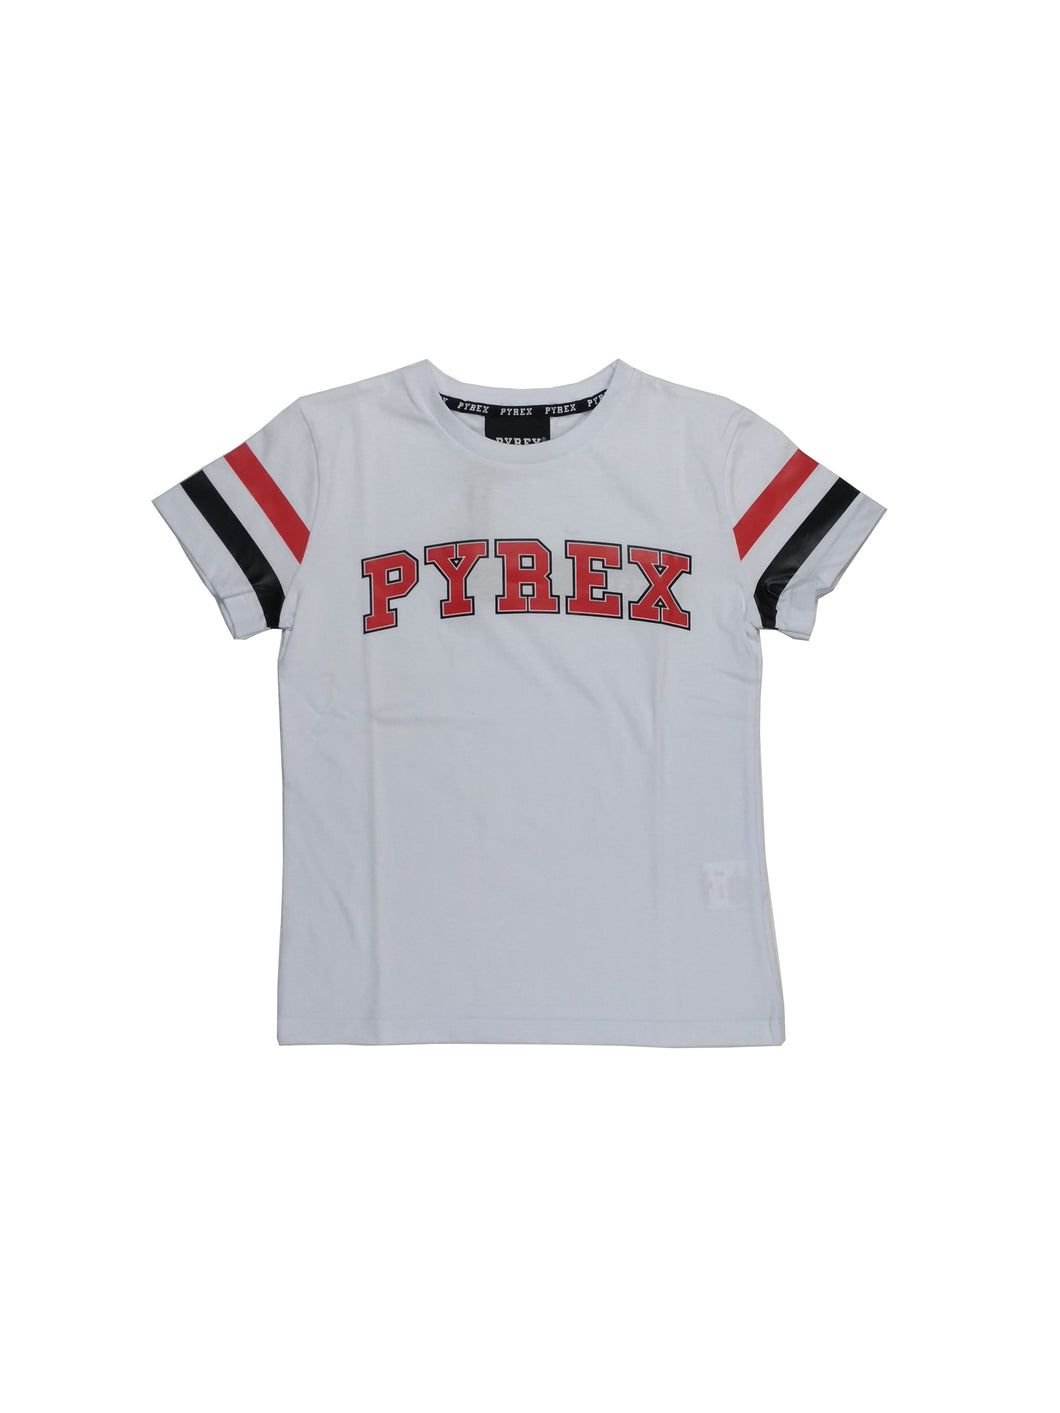 T-shirt PYREX bianca - Junior & Co.it